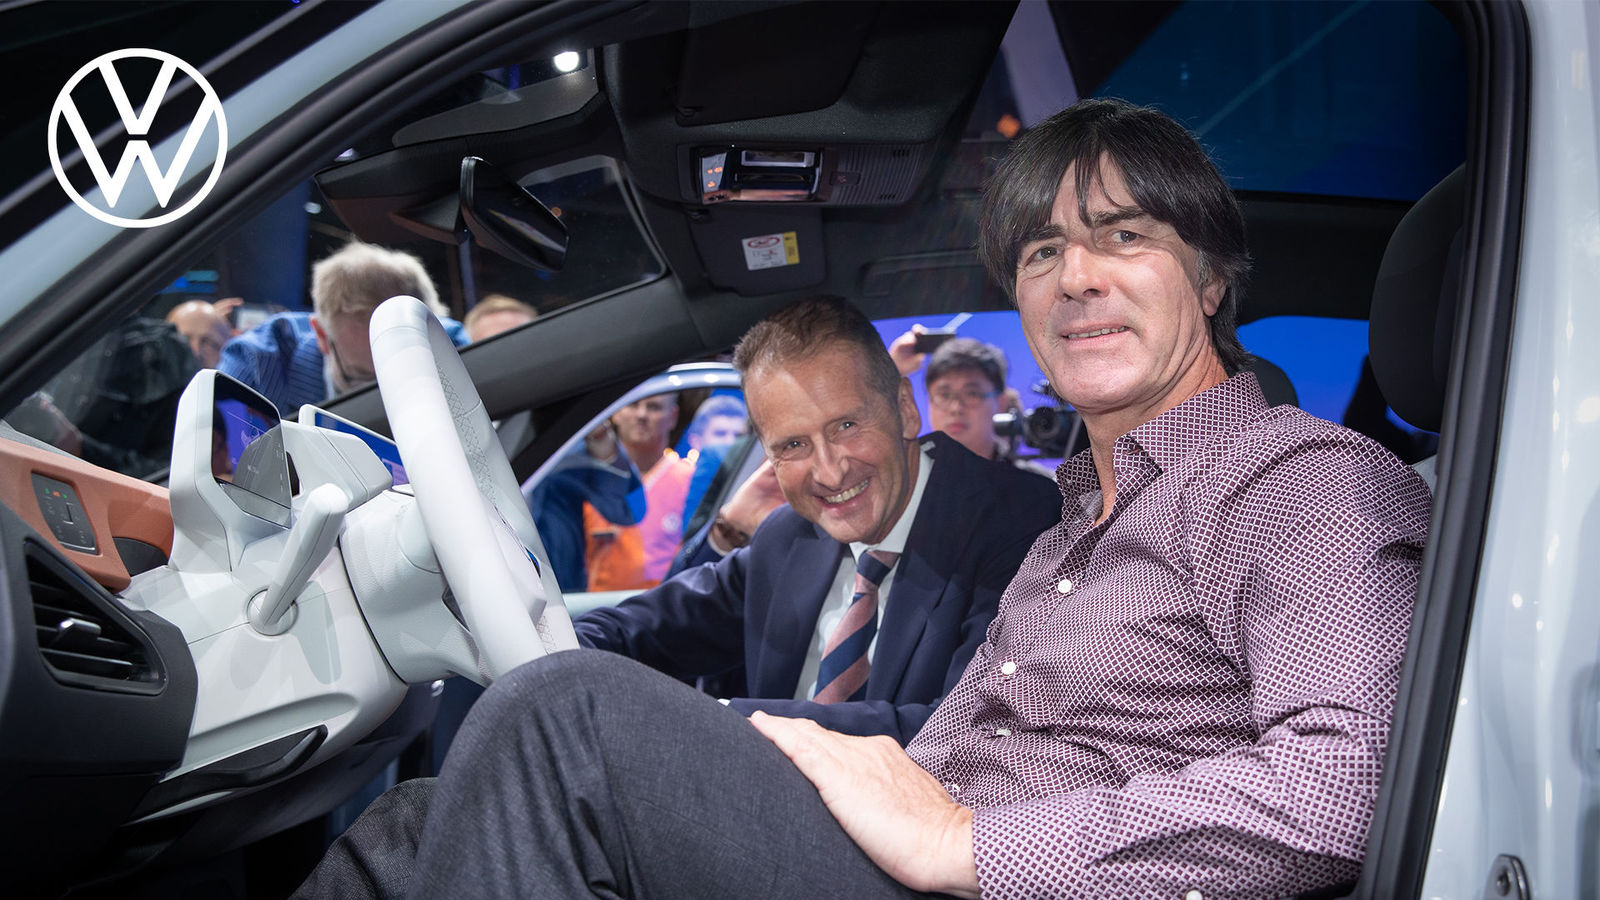 IAA 2019 - DFB visits Volkswagen